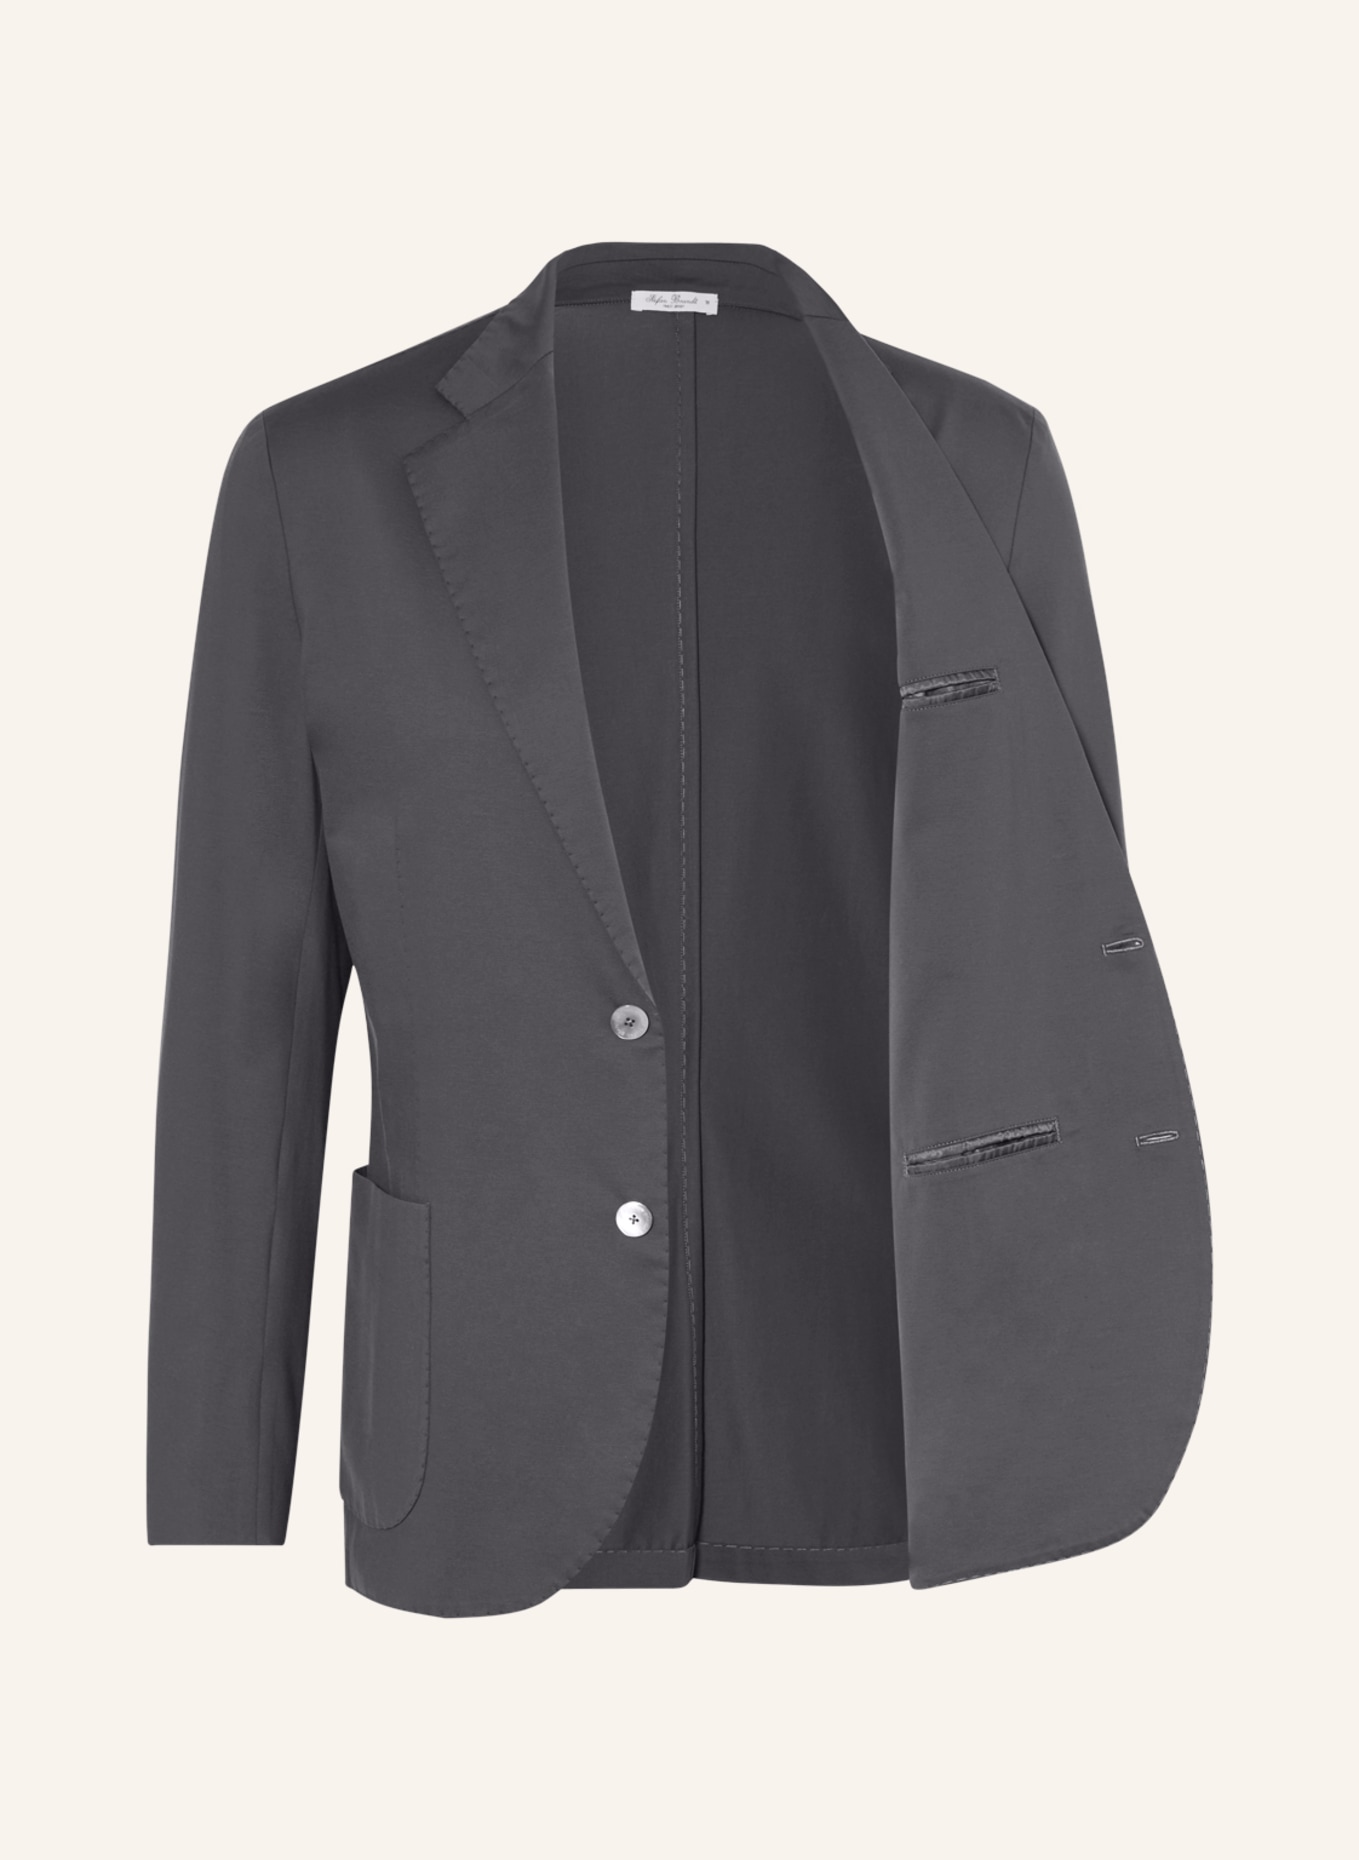 Stefan Brandt Jersey jacket ADRIAN SUPER extra slim fit, Color: GRAY (Image 4)